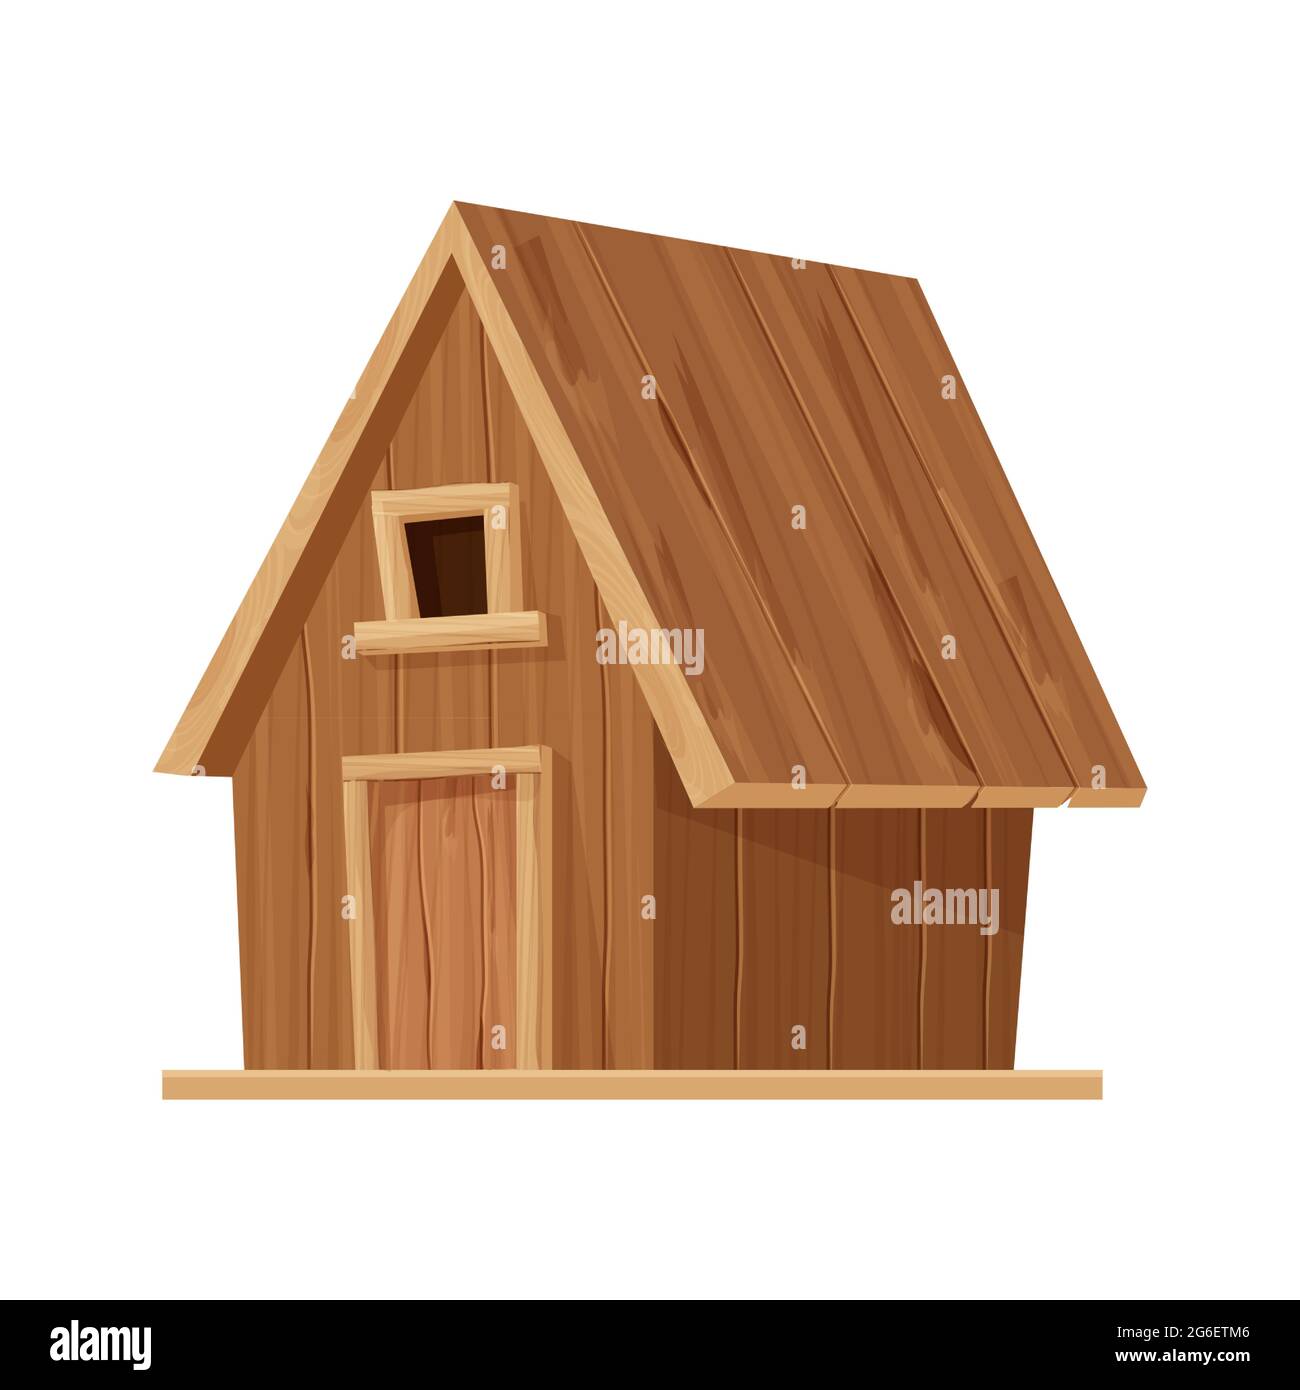 Waldhütte, Holzhaus oder Hütte im Cartoon-Stil isoliert auf weißem Hintergrund. Hütte, Landhaus mit Dach, Fenster und Tür. . Vektorgrafik Stock Vektor